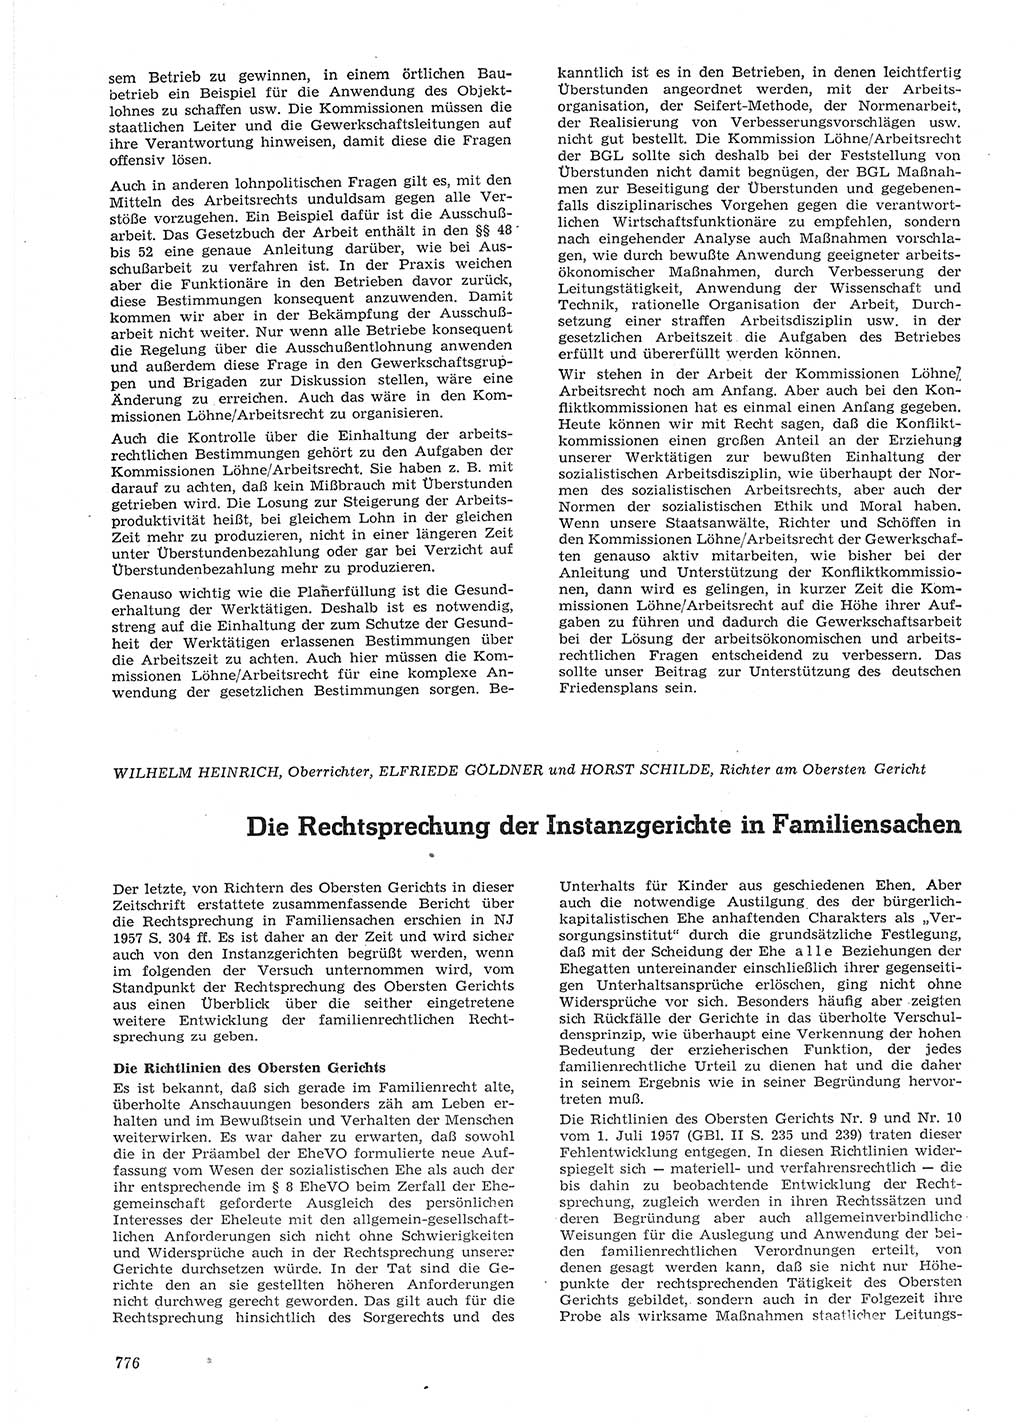 Neue Justiz (NJ), Zeitschrift für Recht und Rechtswissenschaft [Deutsche Demokratische Republik (DDR)], 15. Jahrgang 1961, Seite 776 (NJ DDR 1961, S. 776)